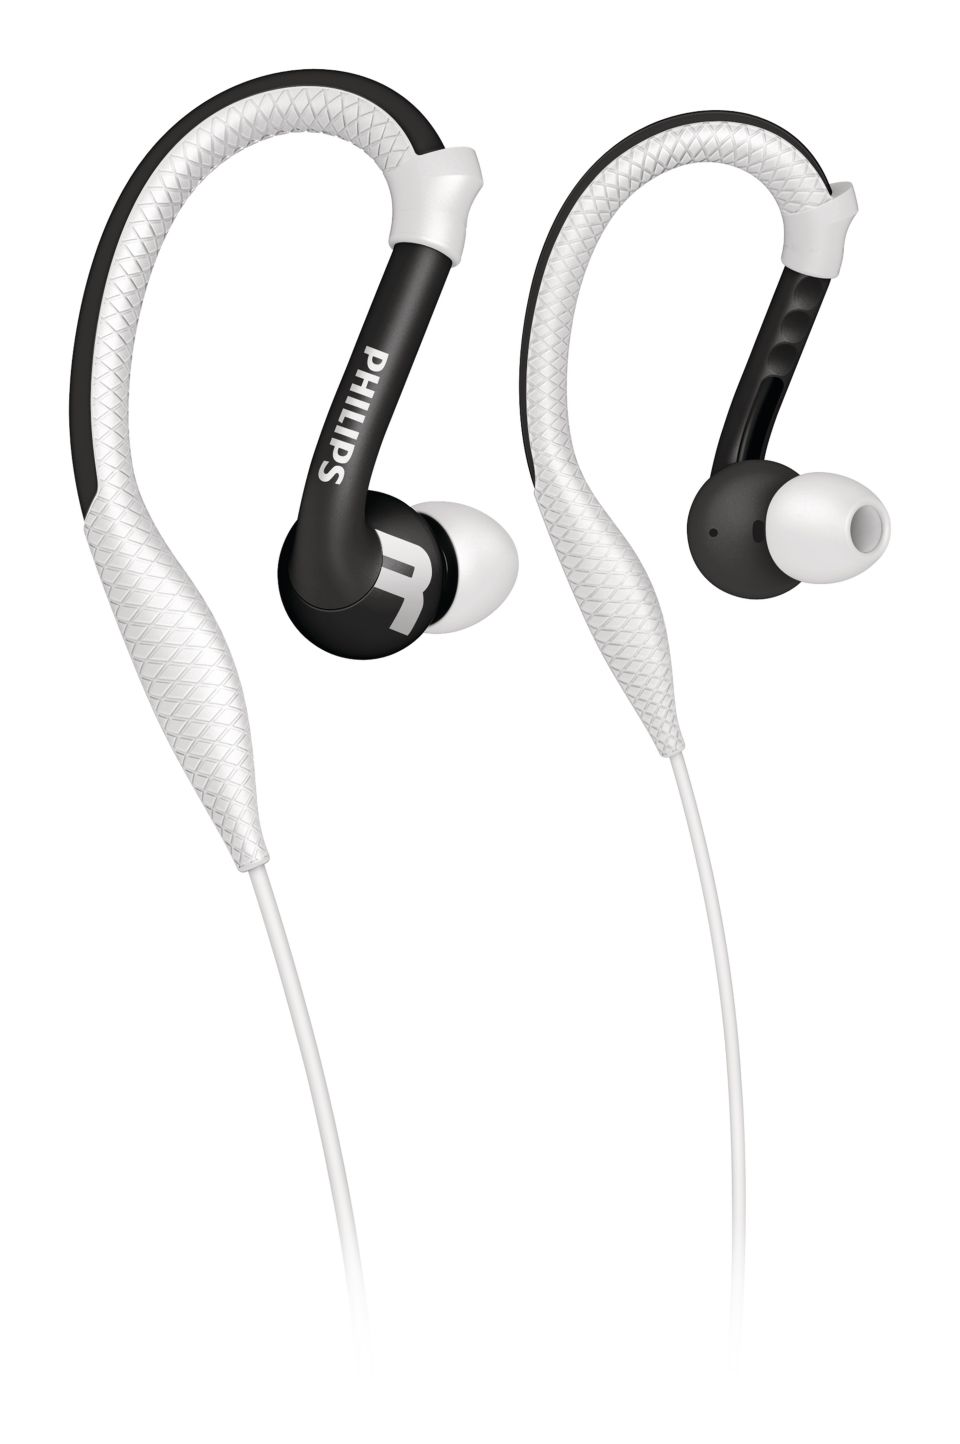 Auriculares Philips In Ear línea Action Fit cableados con manos